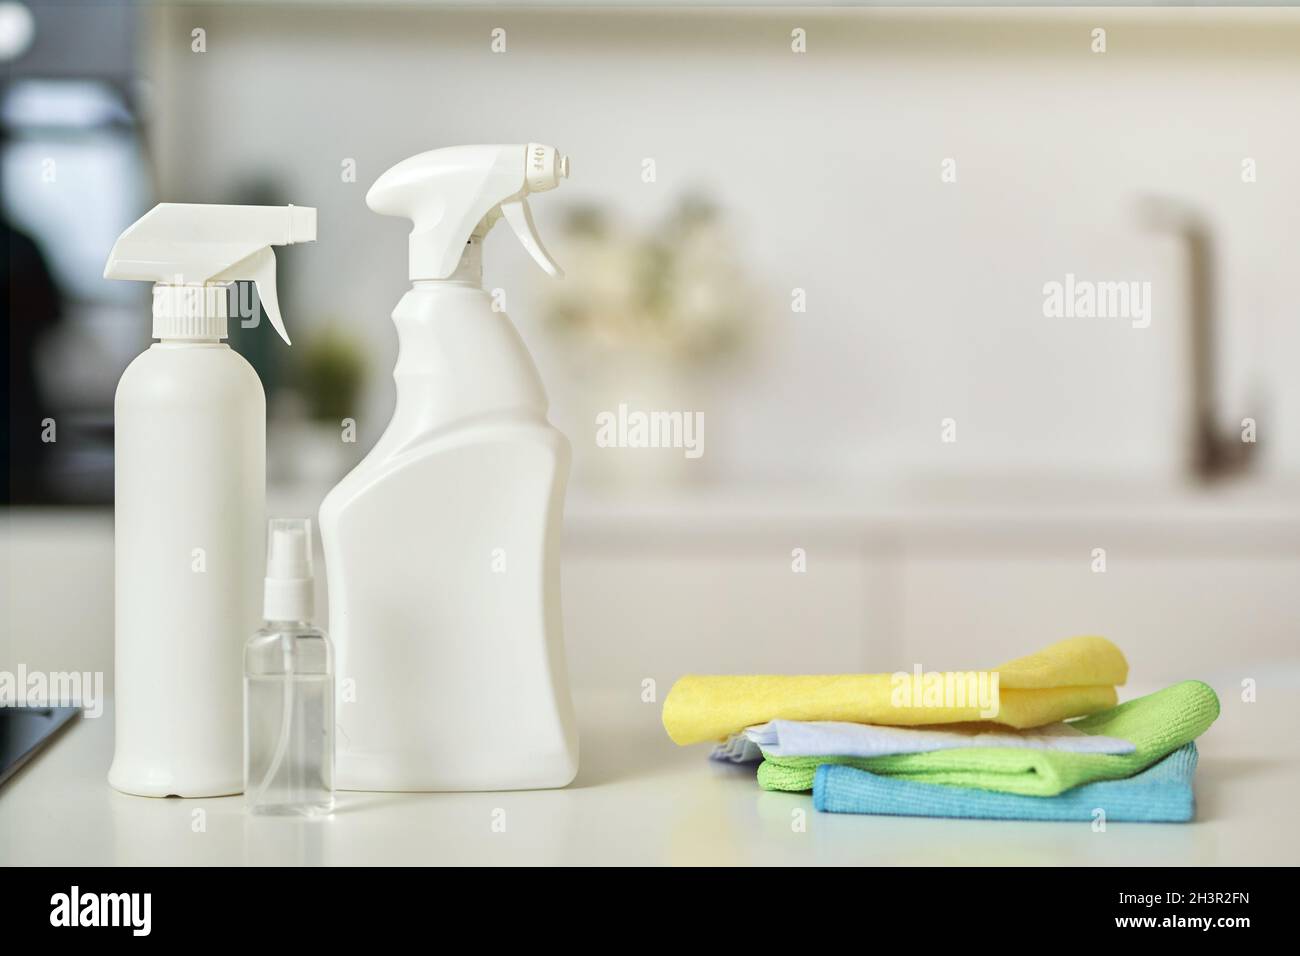 Aufräumen. Nahaufnahme der Waschmittelflaschen und des Teppichs auf der Küchenoberfläche Stockfoto